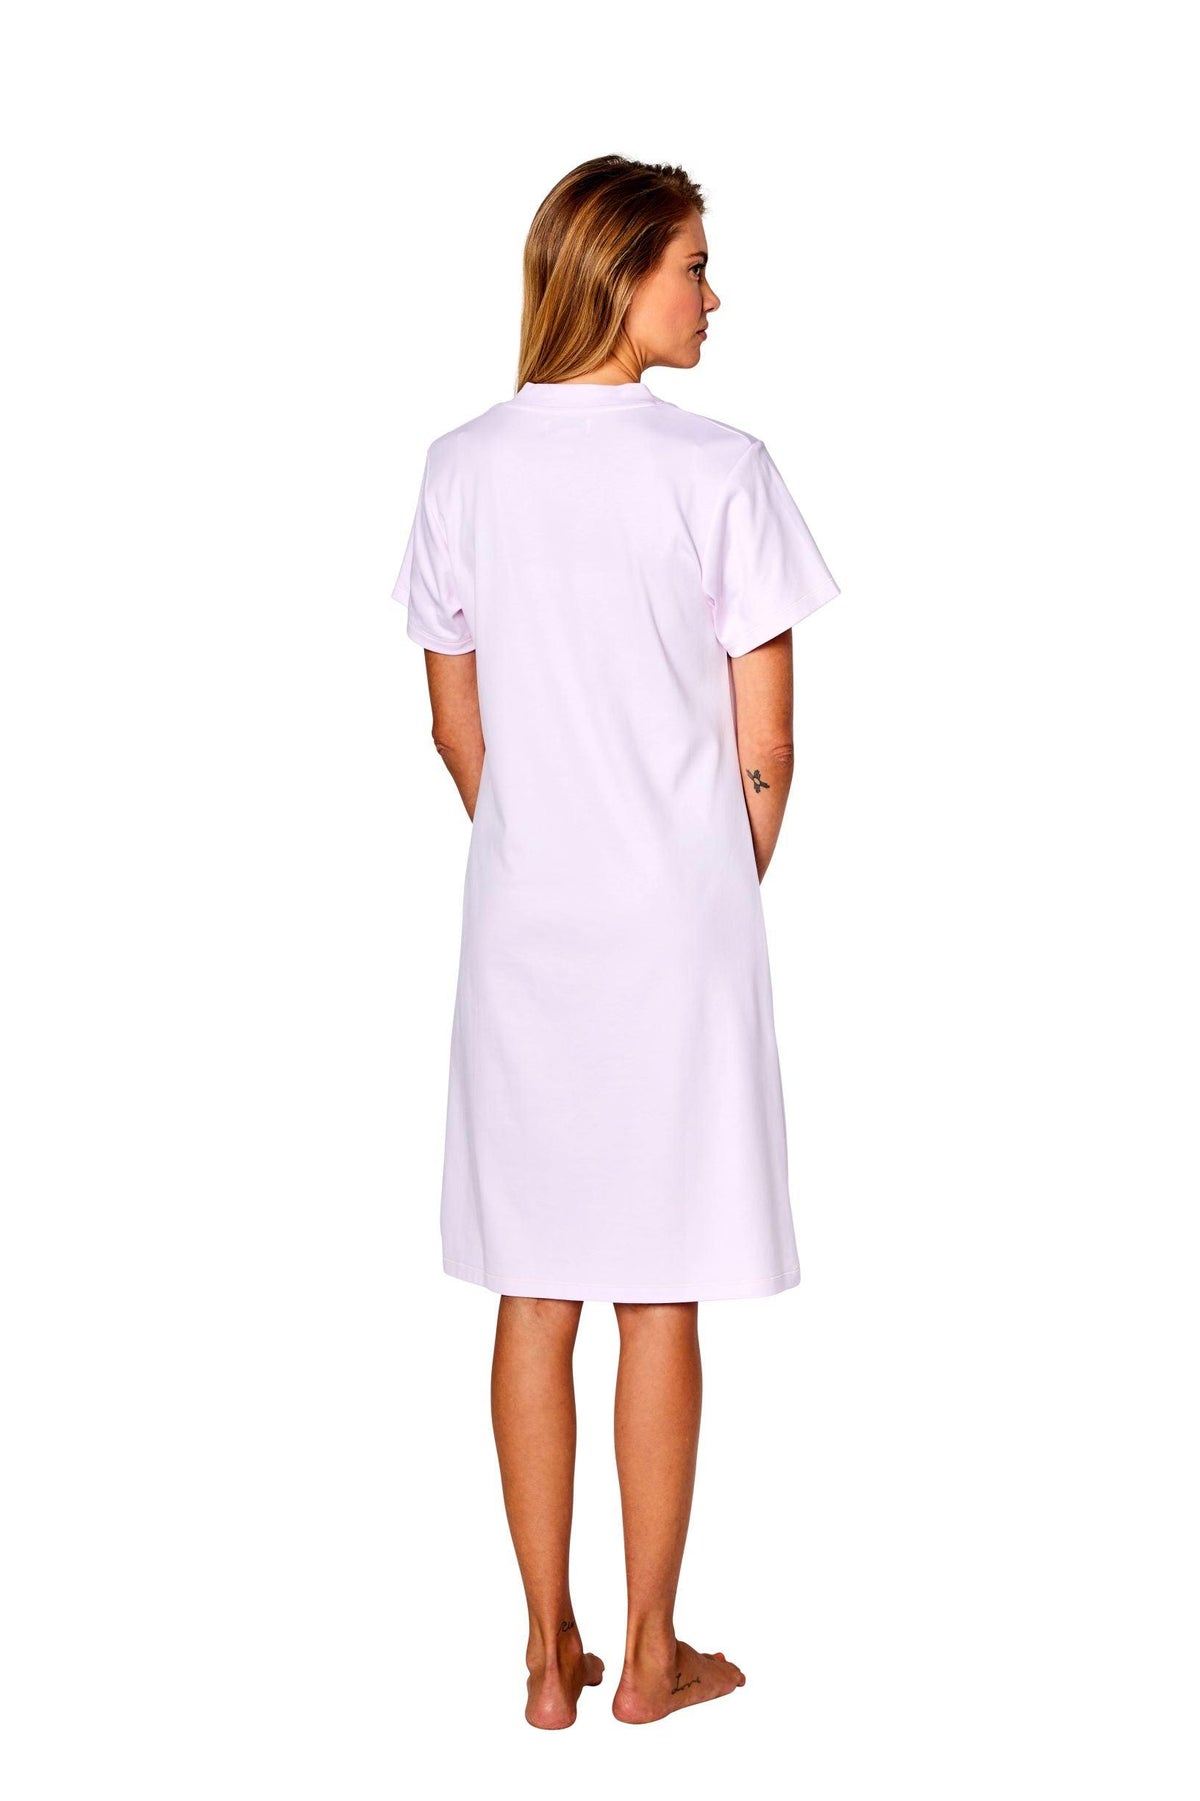 Elle Short Sleeve Gown - Marelle Sleepwear